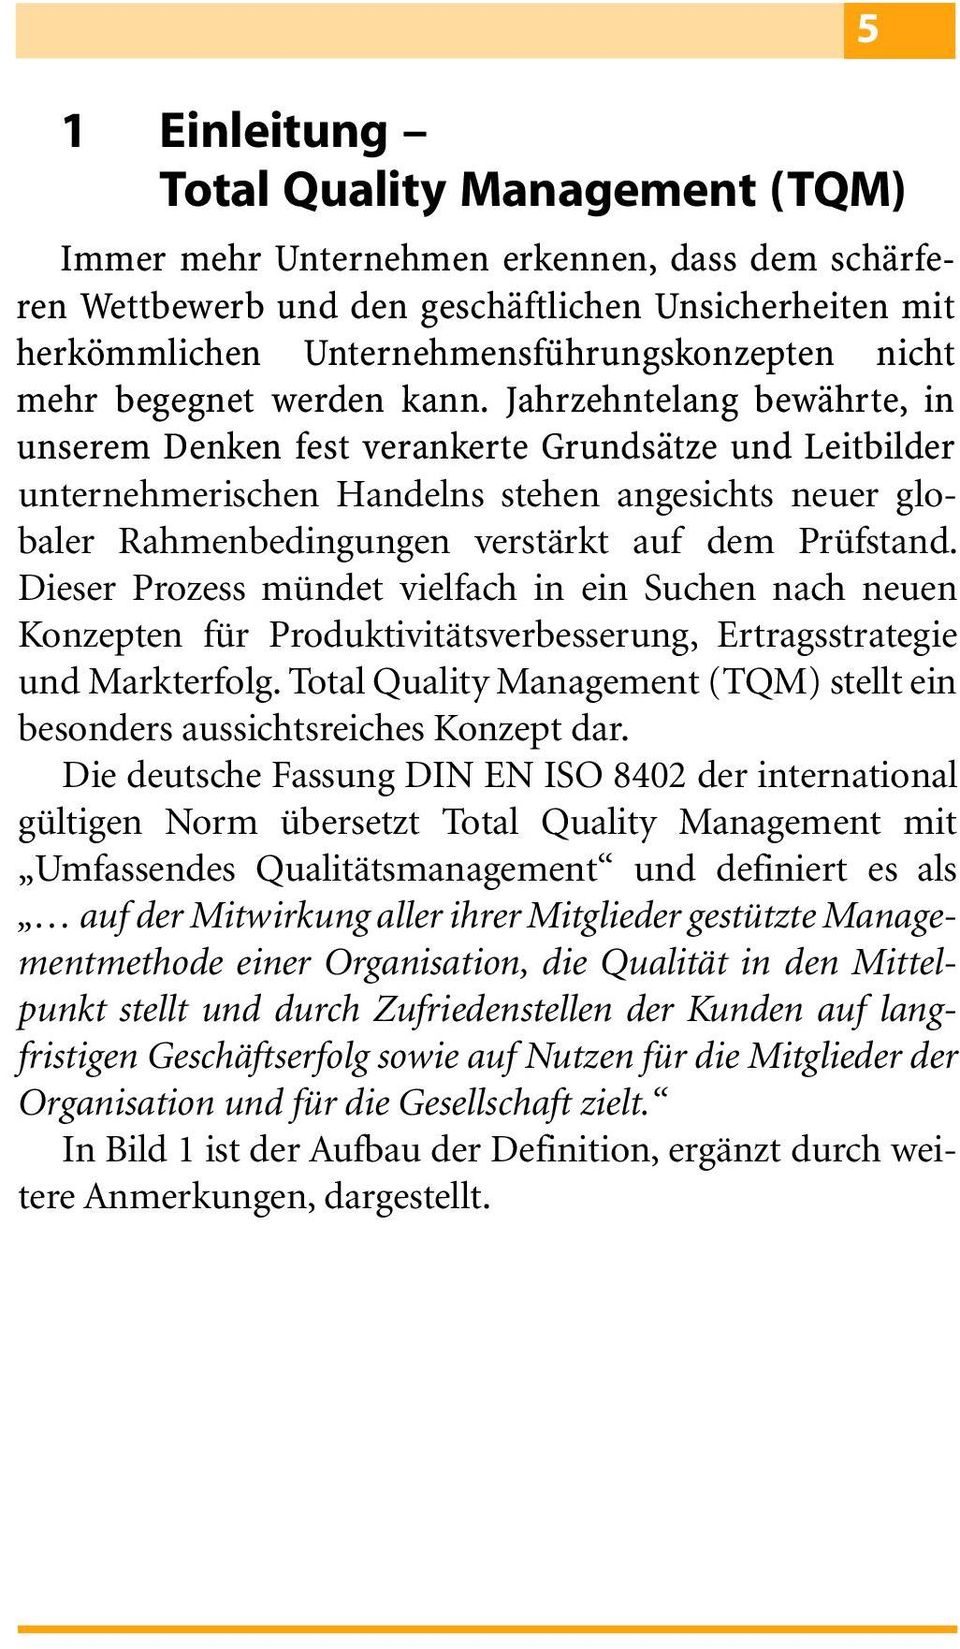 Total Quality Management (TQM) stellt ein besonders aussichtsreiches Konzept dar.